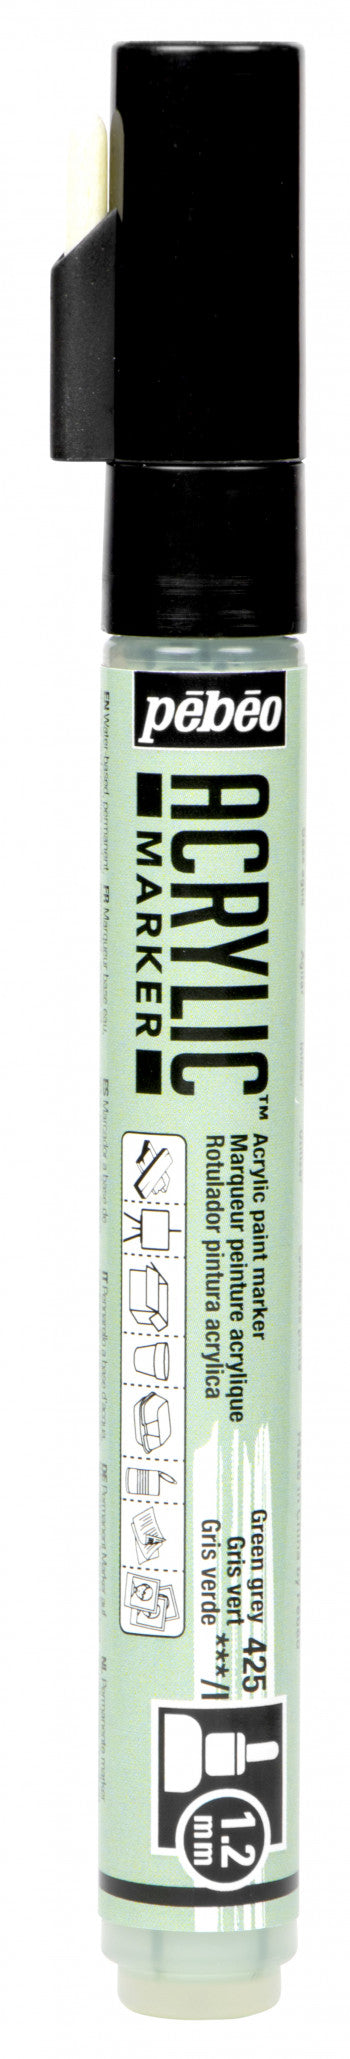 Acrylic Marker 1.2mm Pebeo Gray green